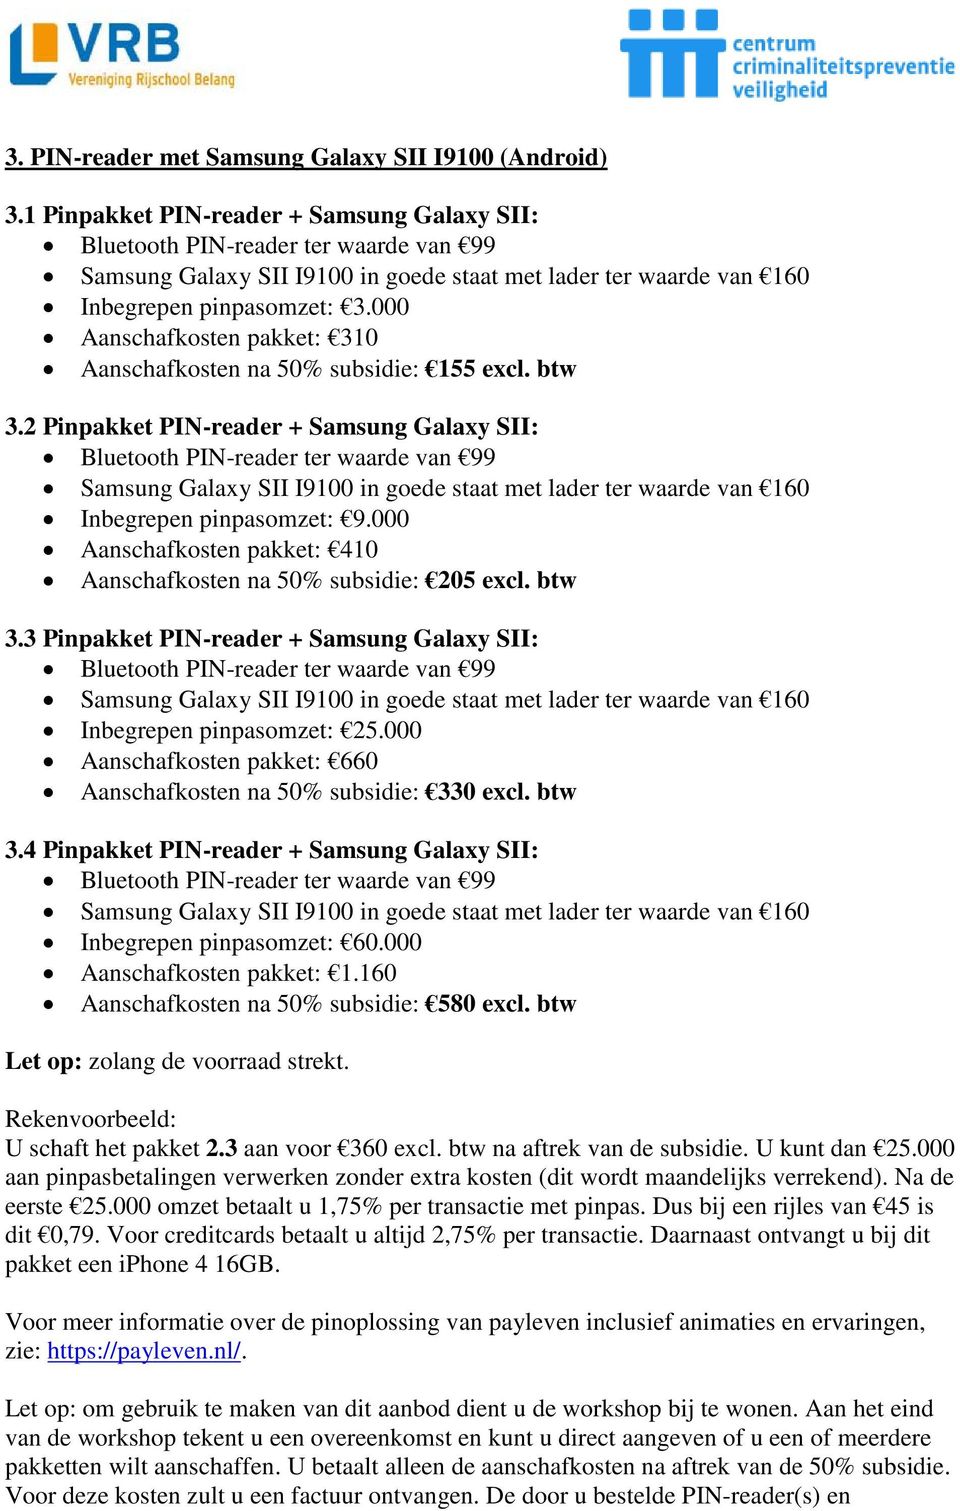 3 Pinpakket PIN-reader + Samsung Galaxy SII: Aanschafkosten pakket: 660 Aanschafkosten na 50% subsidie: 330 excl. btw 3.4 Pinpakket PIN-reader + Samsung Galaxy SII: Aanschafkosten pakket: 1.